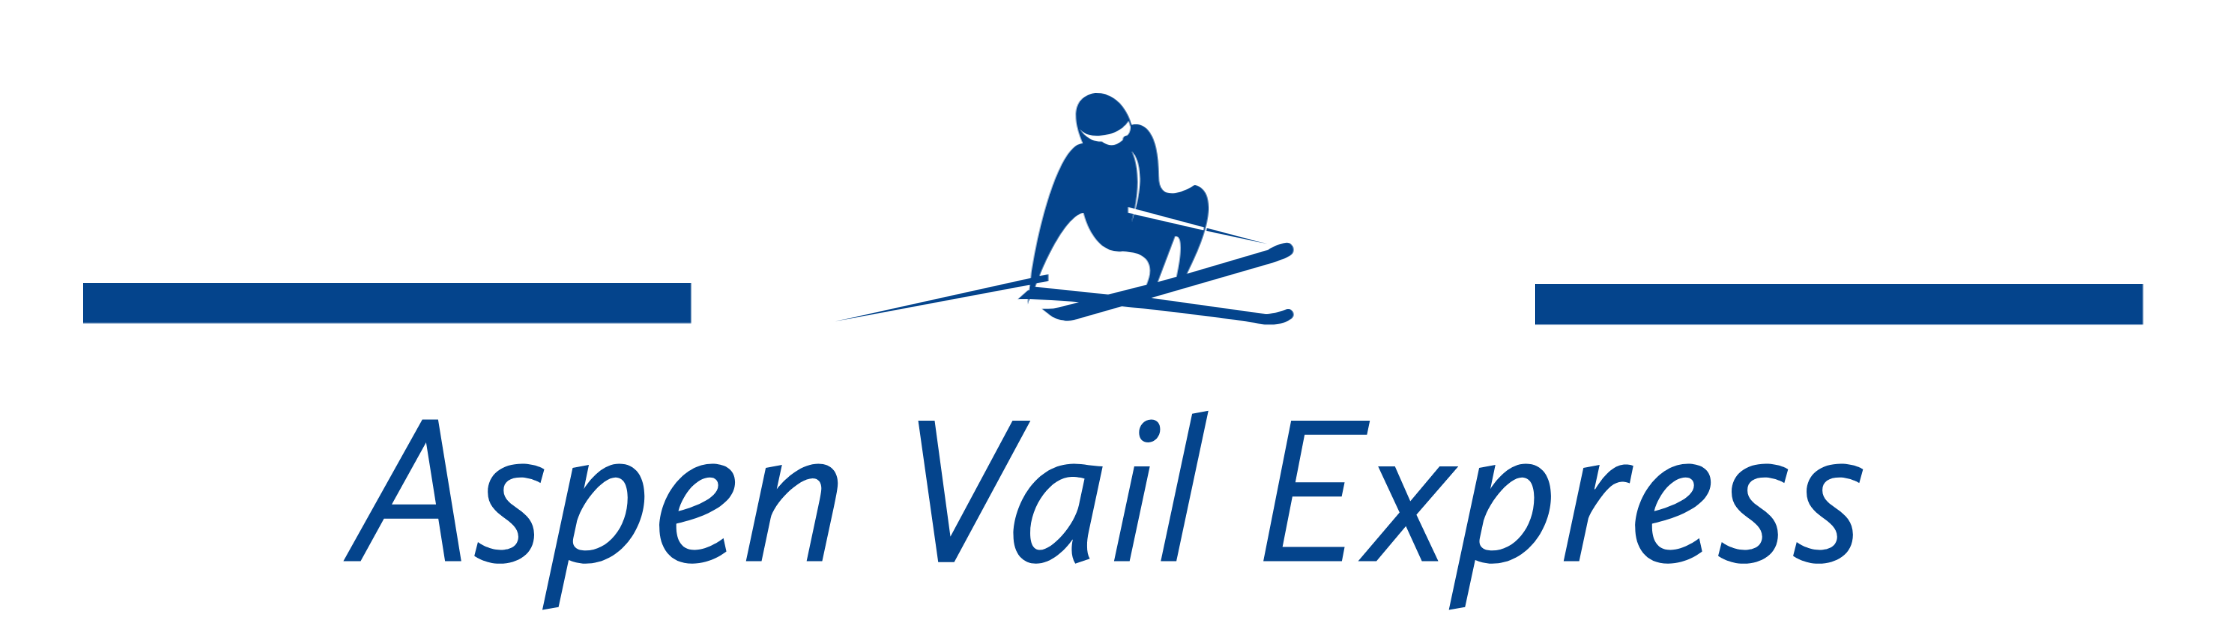 Aspen Vail Express